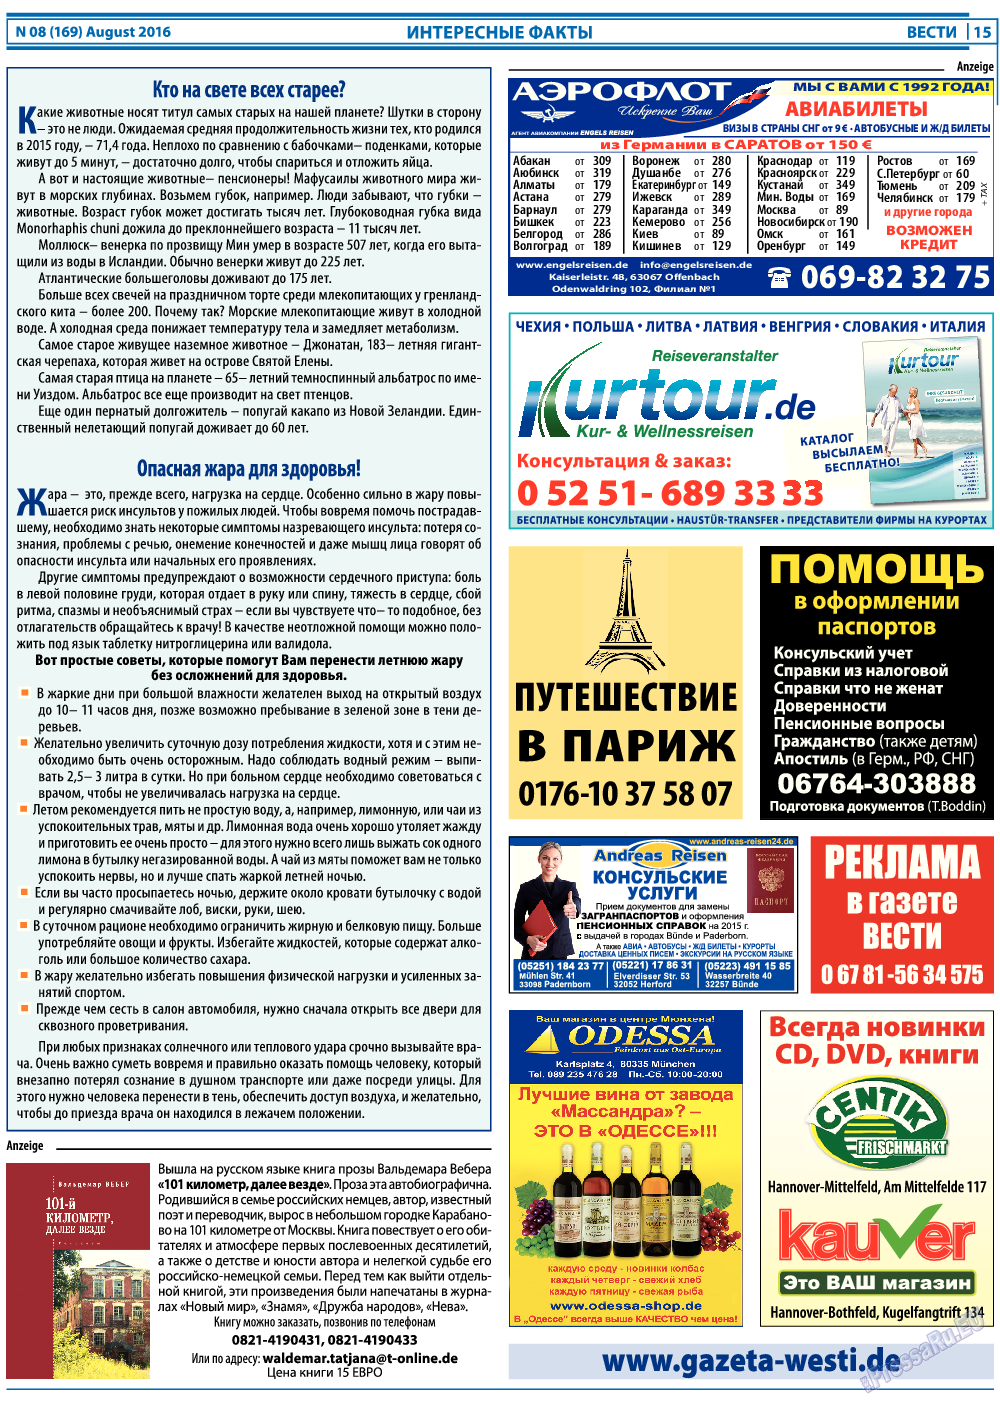 Вести, газета. 2016 №8 стр.15